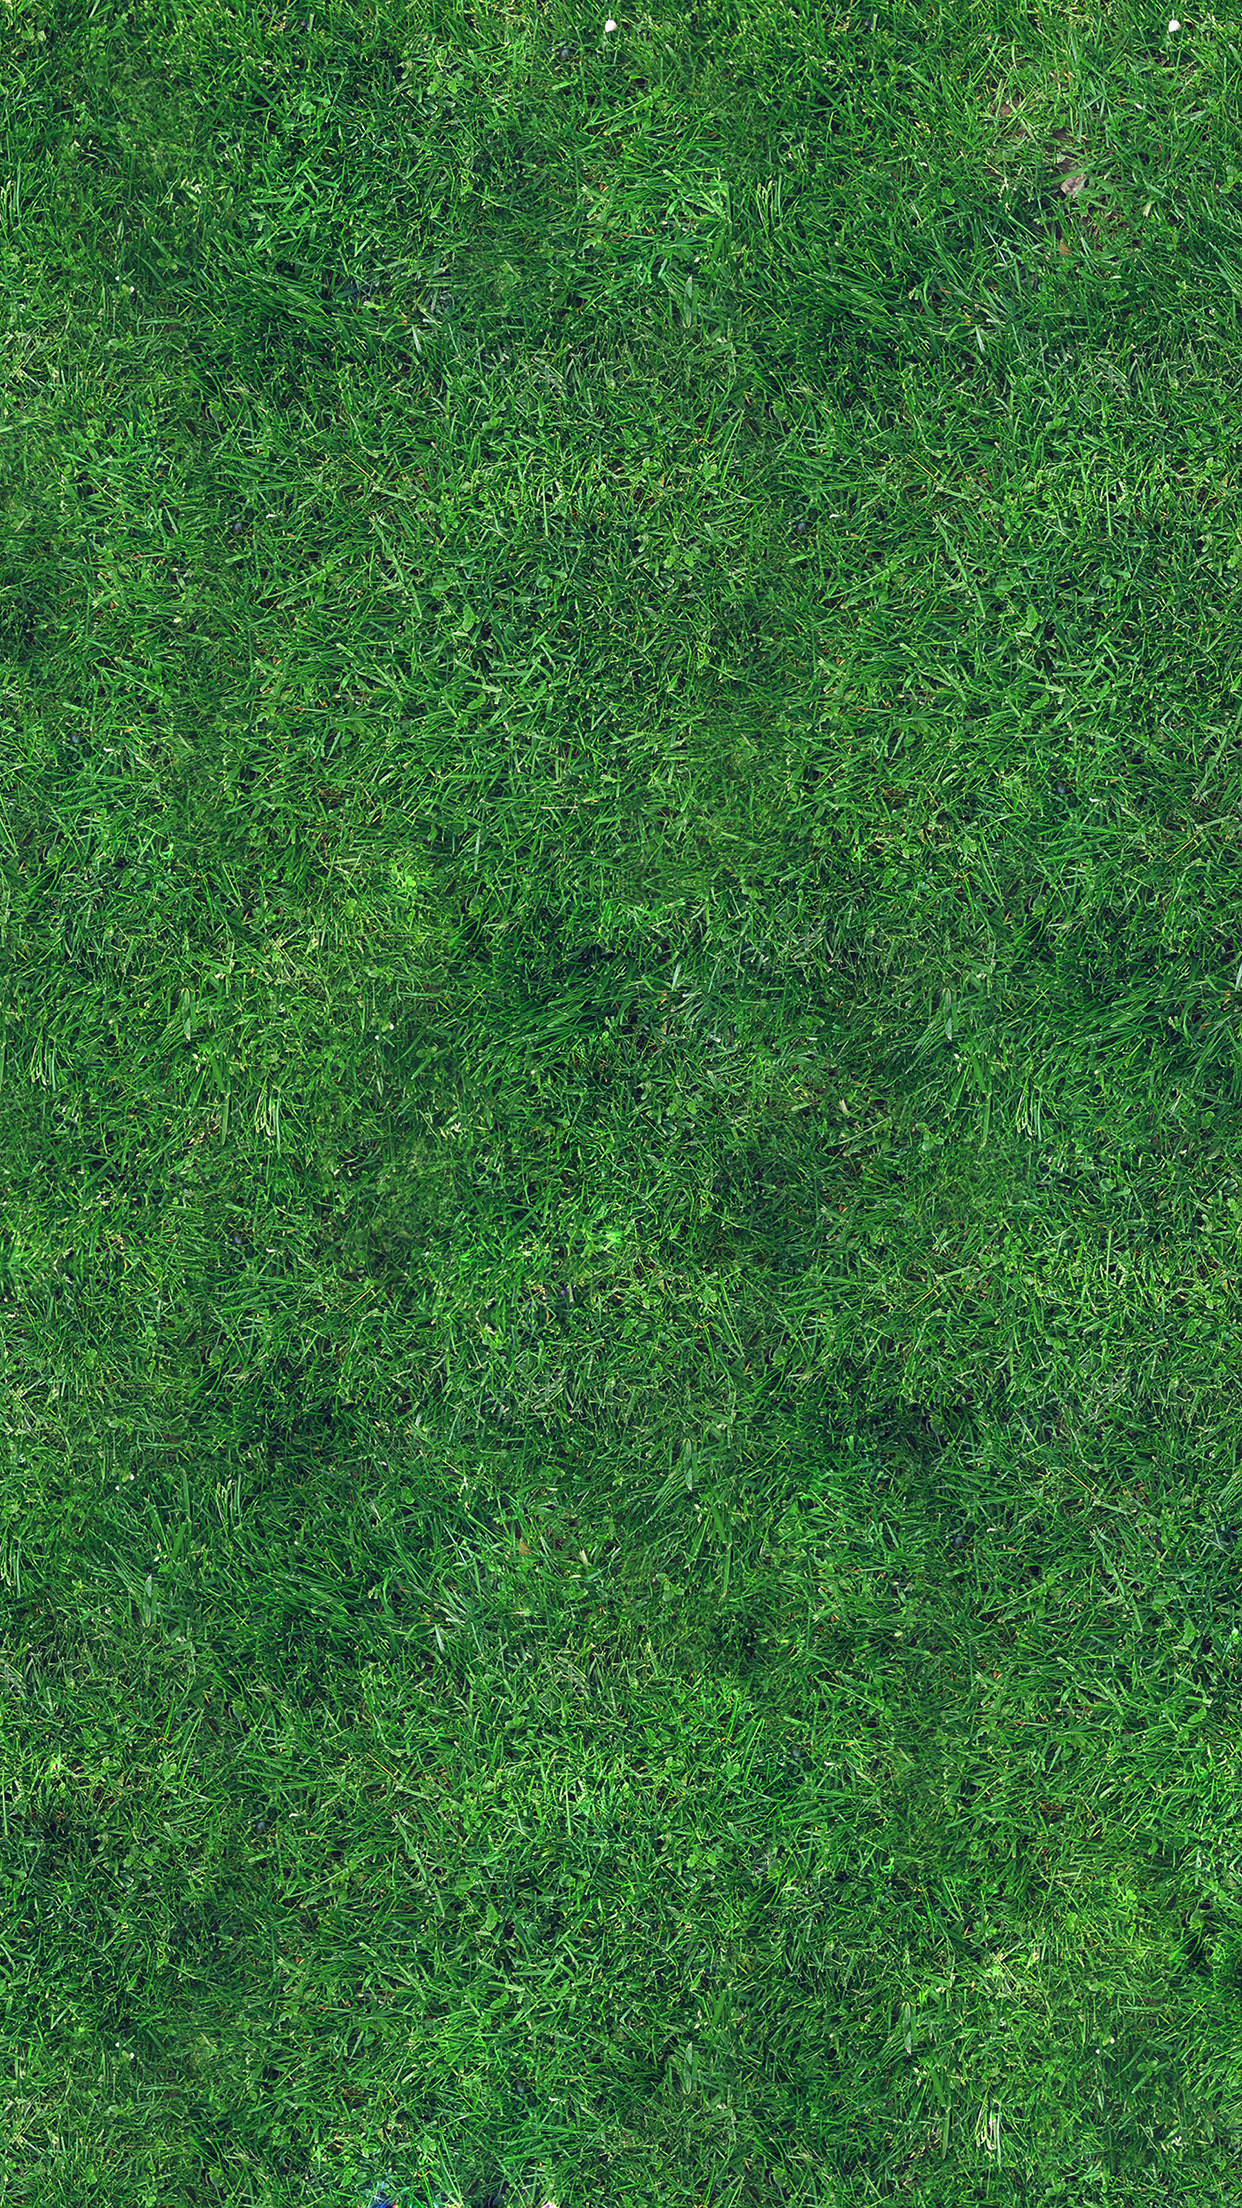 grass texture nature pattern